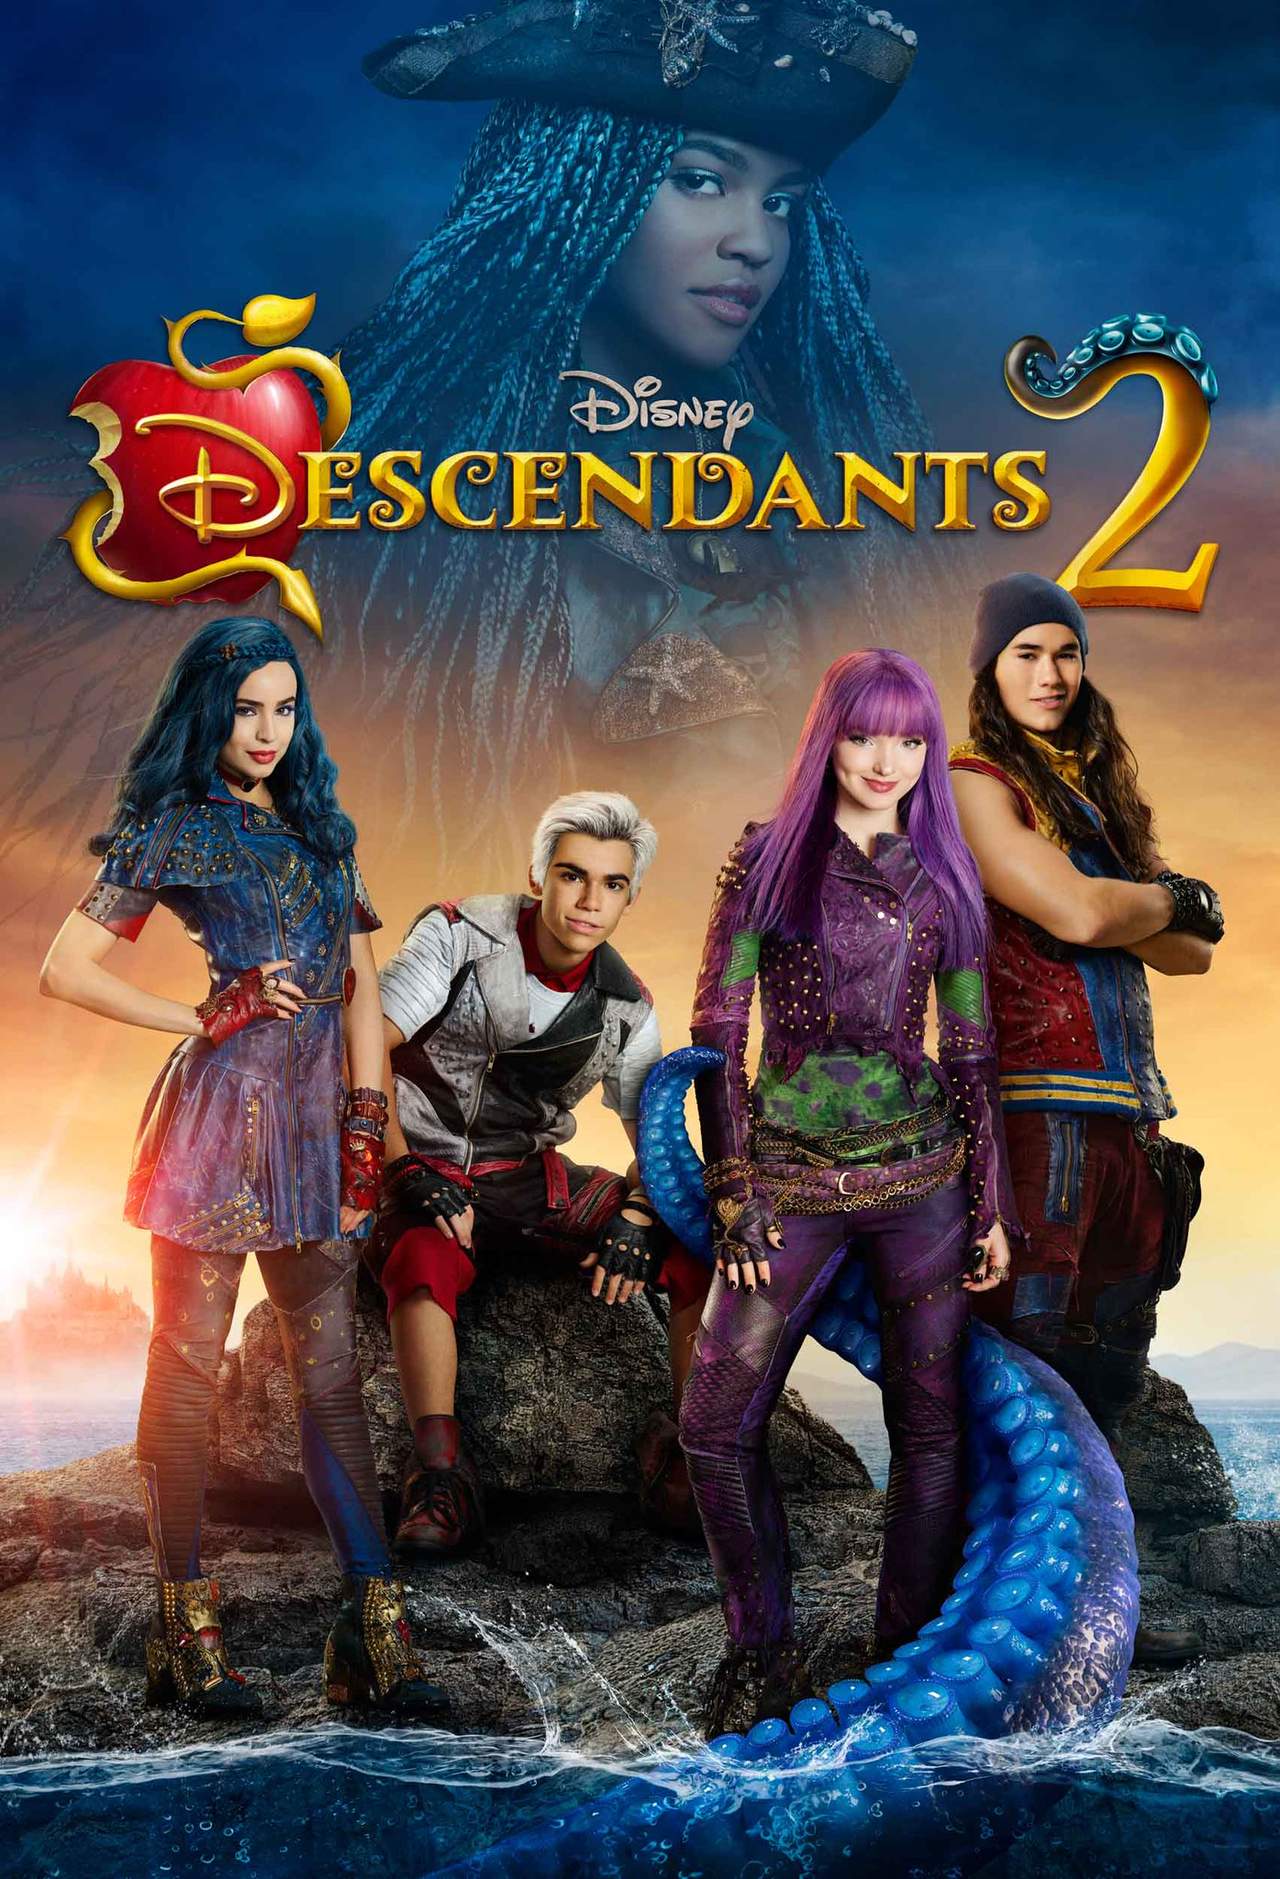 El pasado 20 de agosto, la emisión en simultáneo en Disney Channel y Disney XD de Descendientes 2 alcanzó más de cinco millones de espectadores únicos. (ESPECIAL) 